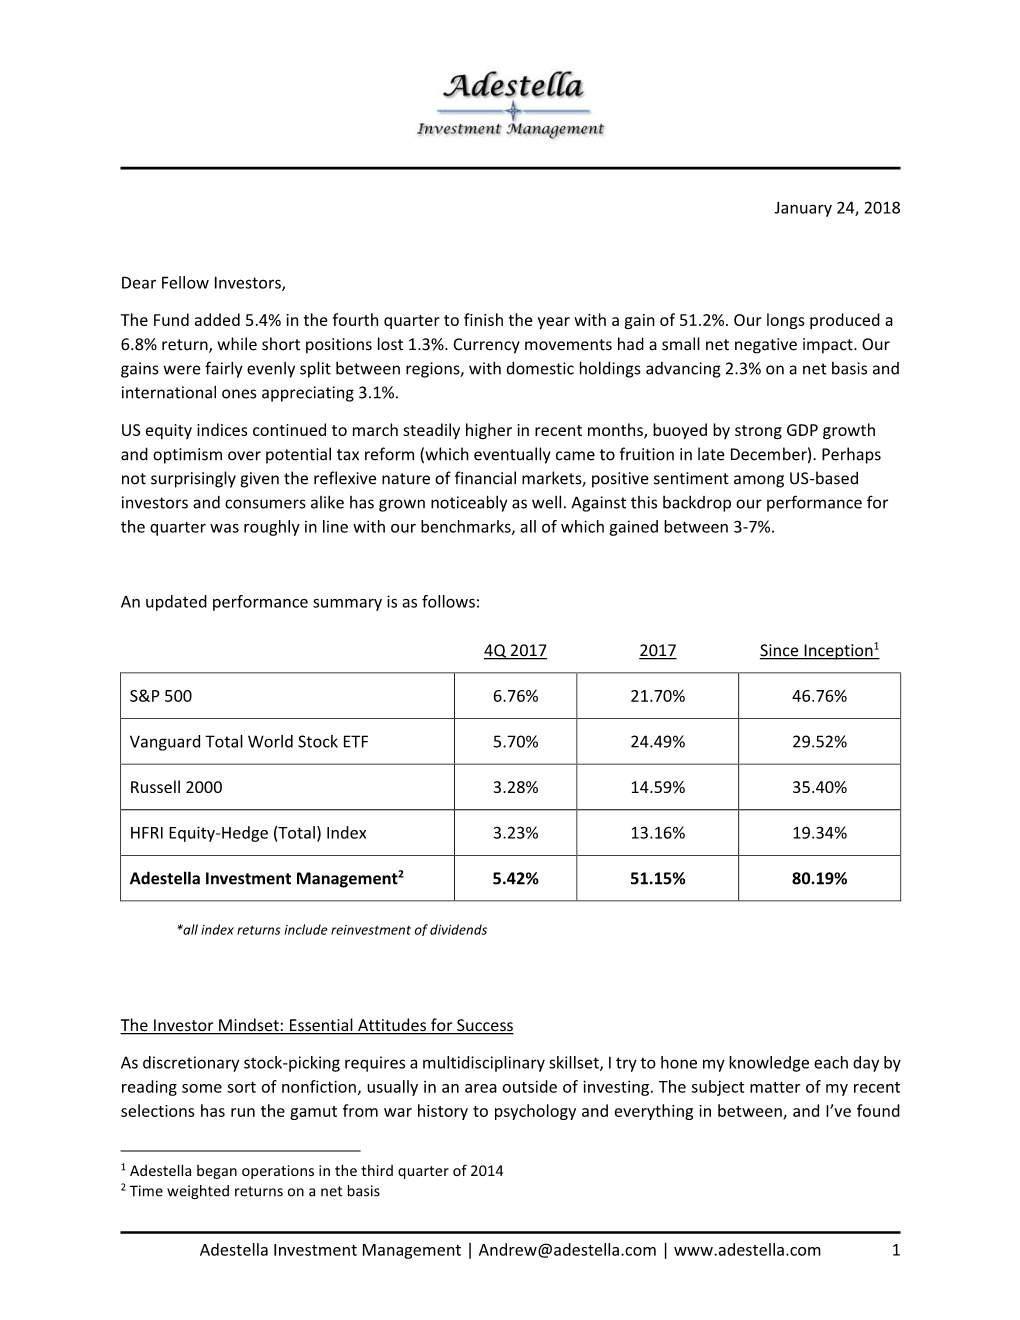 Adestella Investment Management2 5.42% 51.15% 80.19%